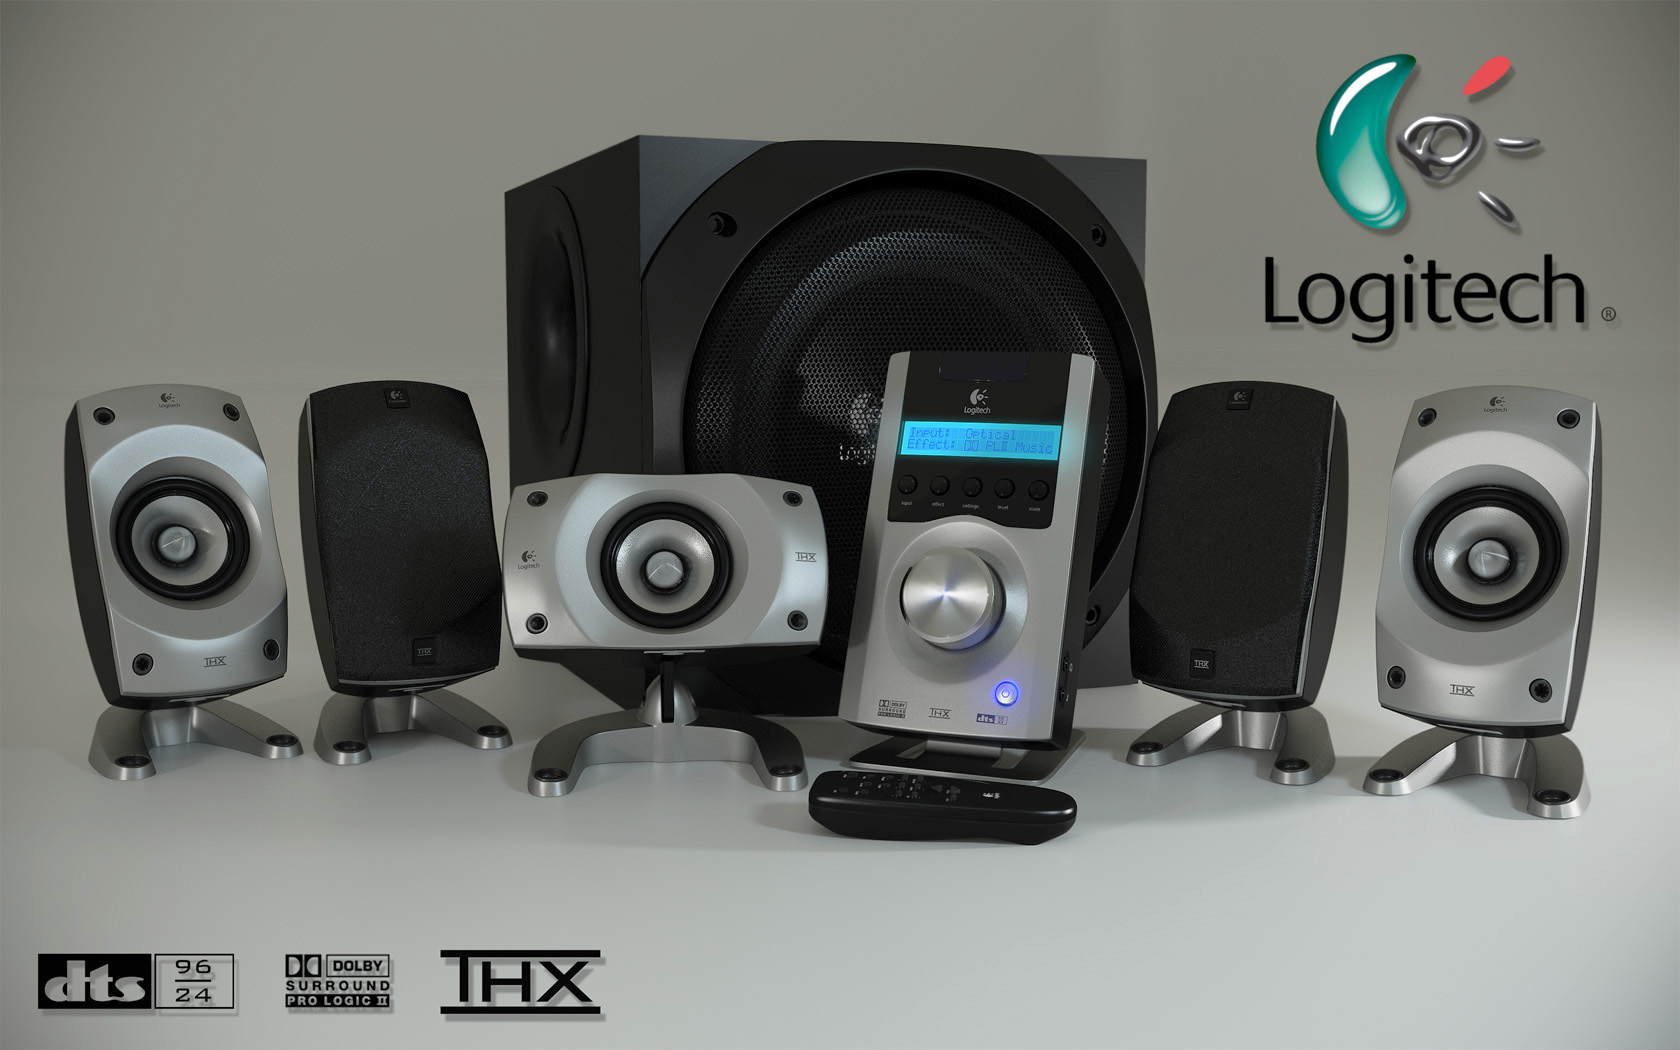 spøgelse Remission dråbe Logitech Z-5500 Speaker System by Artistic-Kage on DeviantArt